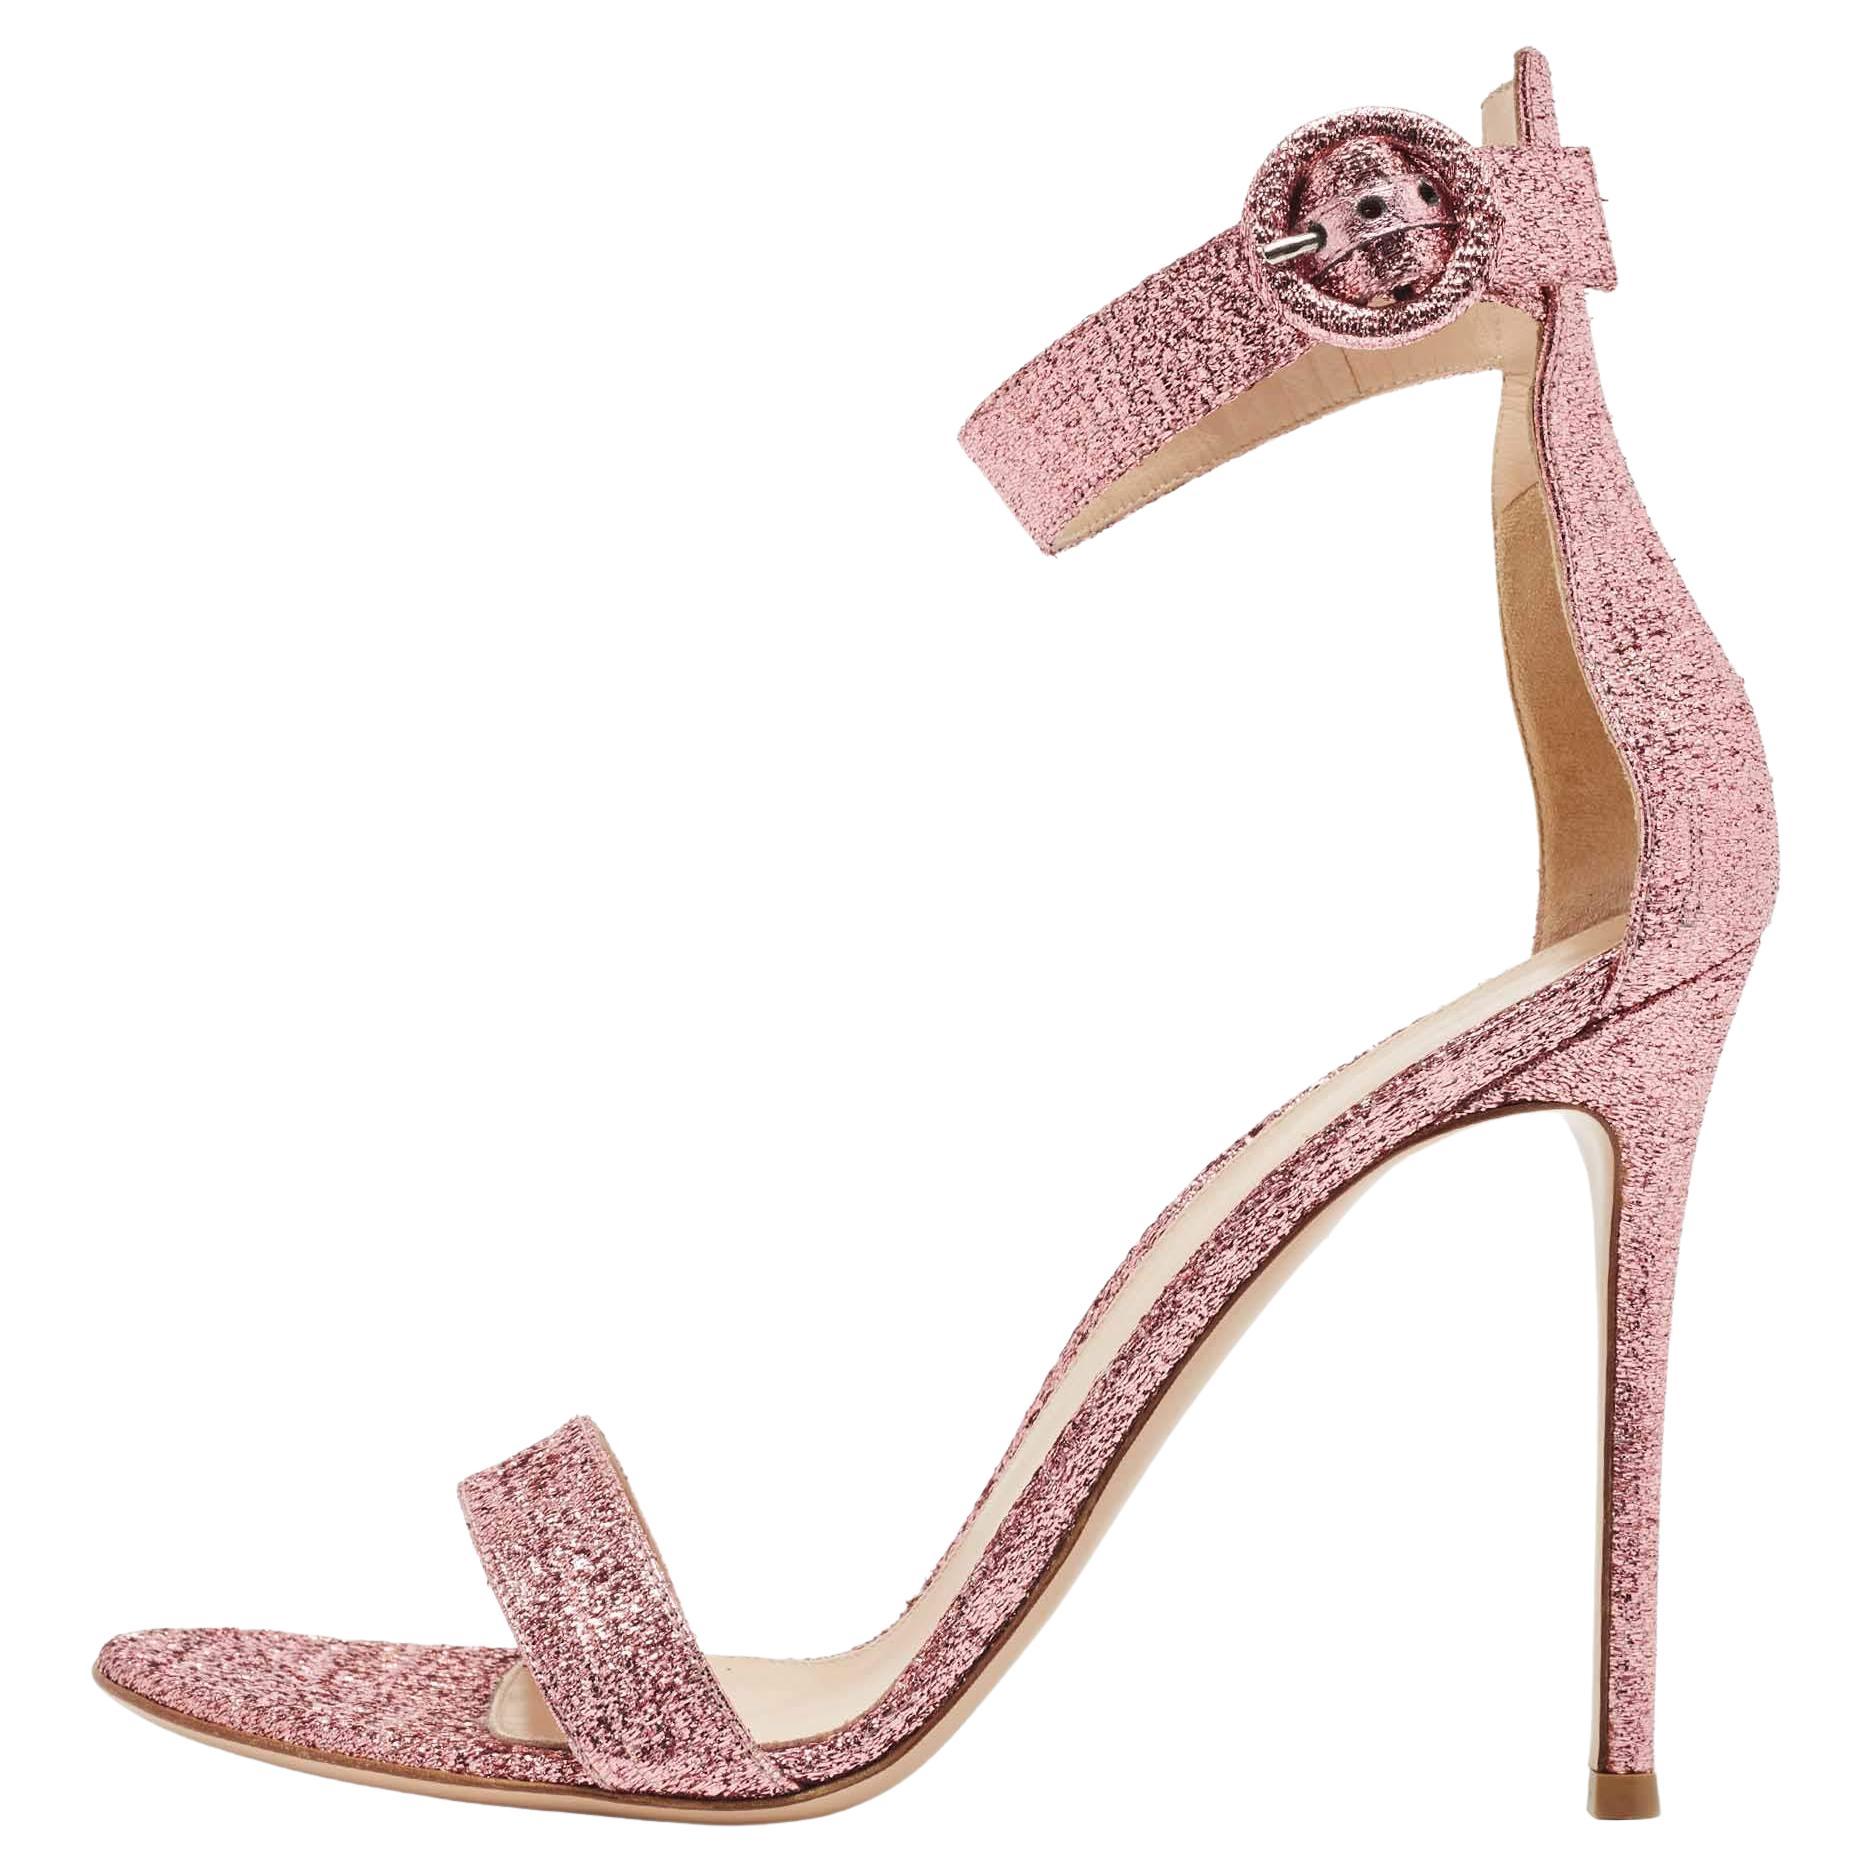 Gianvito Rossi Pink Glitter Portofino Ankle Strap Sandals Size 41